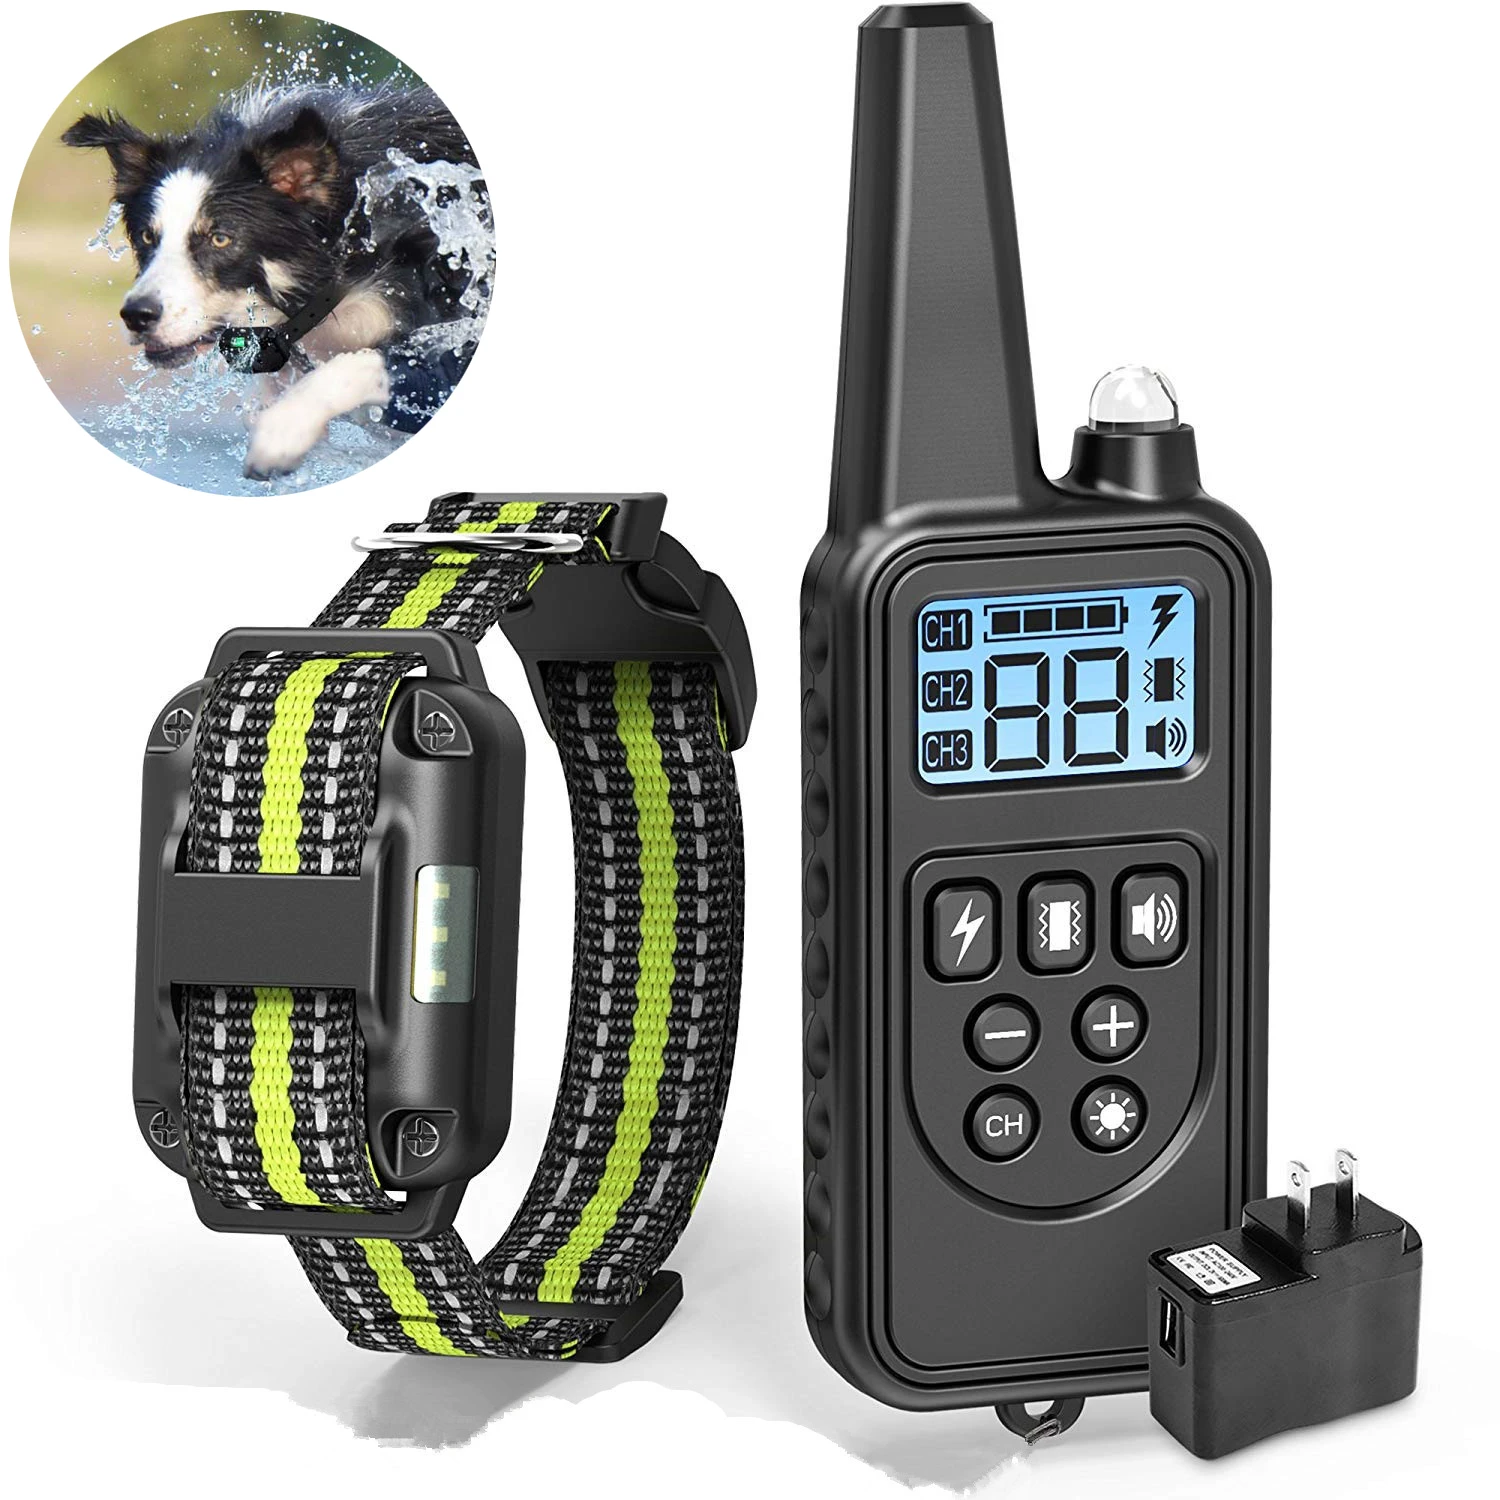 Collar eléctrico para perros remoto de 800 metros, de adiestramiento para perros IP6X al agua, 1 unidad, 2 collares eléctricos para perros, Collar de choque para perros|Collares de